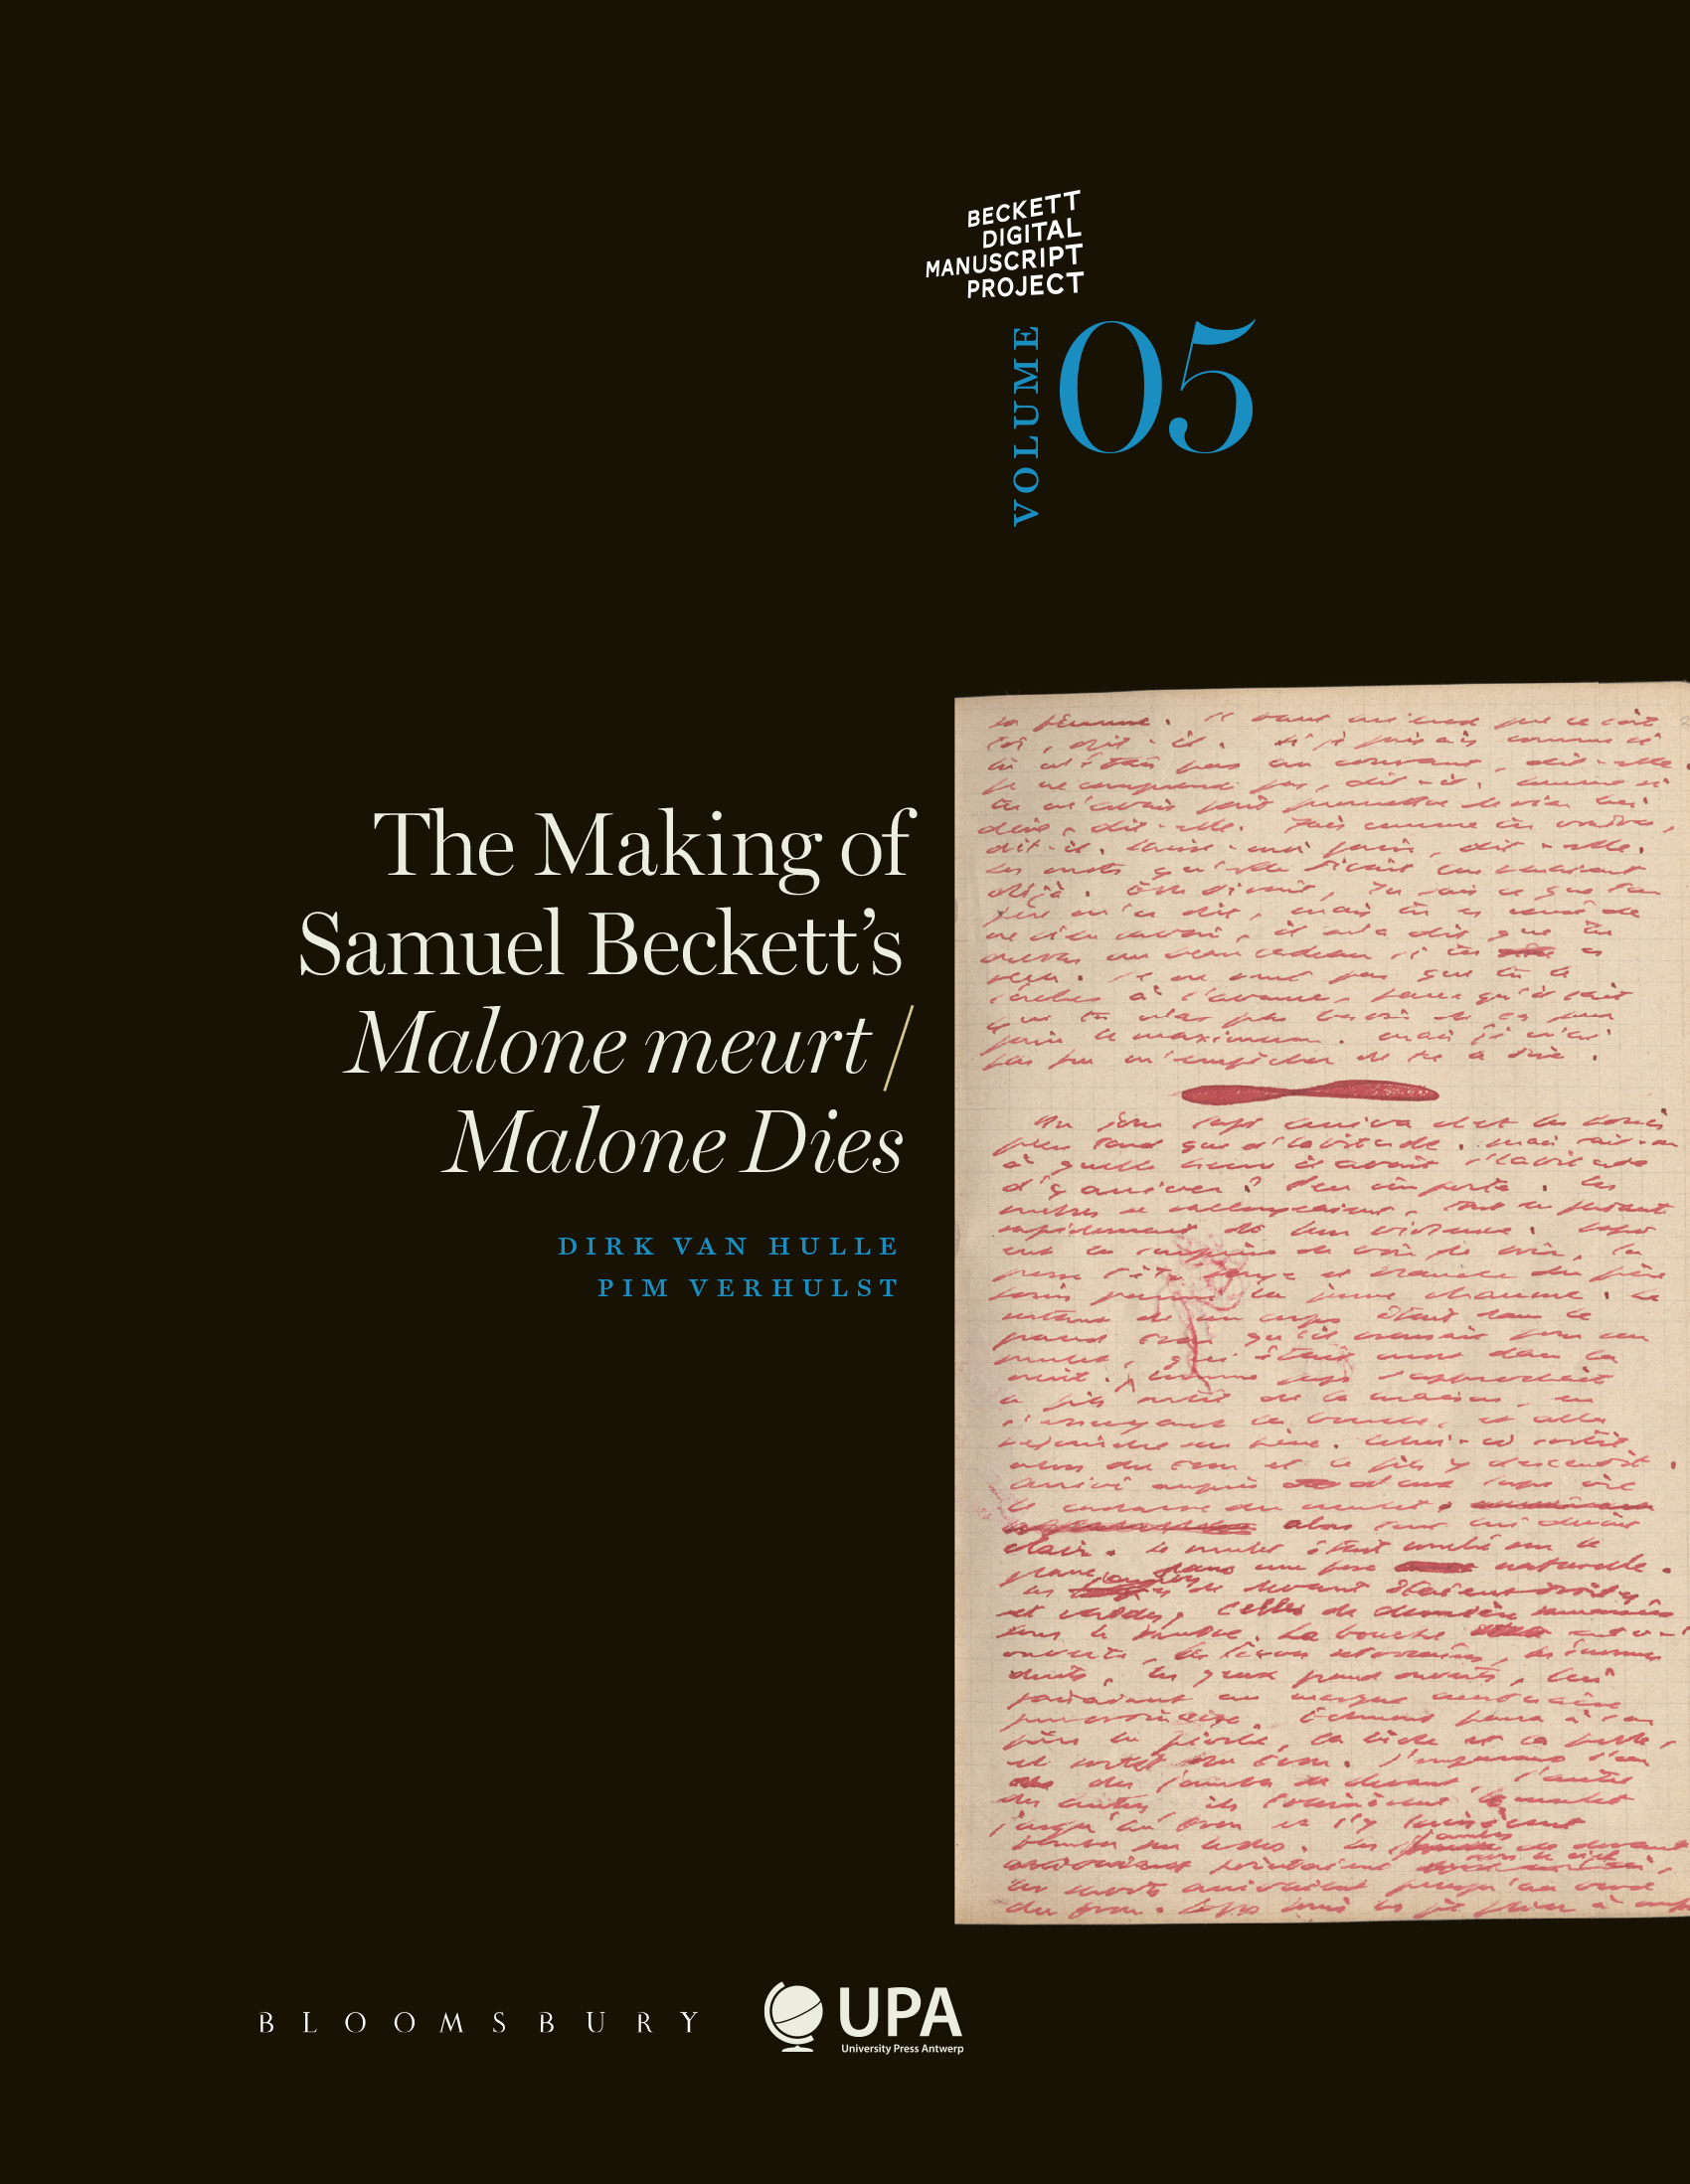 THE MAKING OF SAMUEL BECKETT'S MALONE MEURT/MALONE DIES